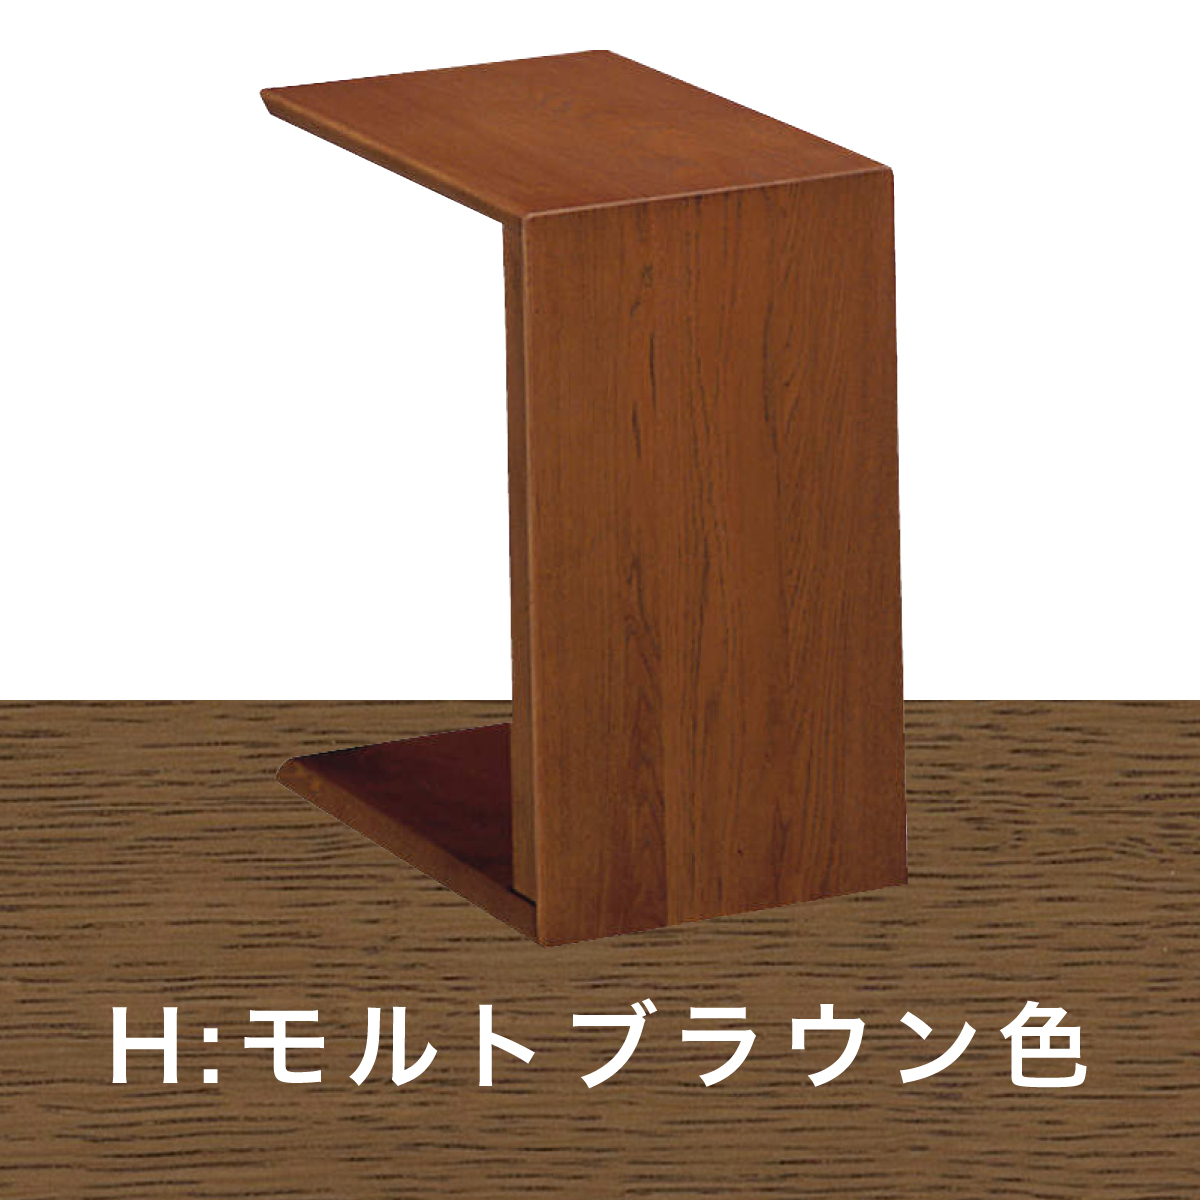 サイドテーブルカリモク コの字型 テーブル TU1752 オーク 材 木製 コンパクト 2WAYテー...